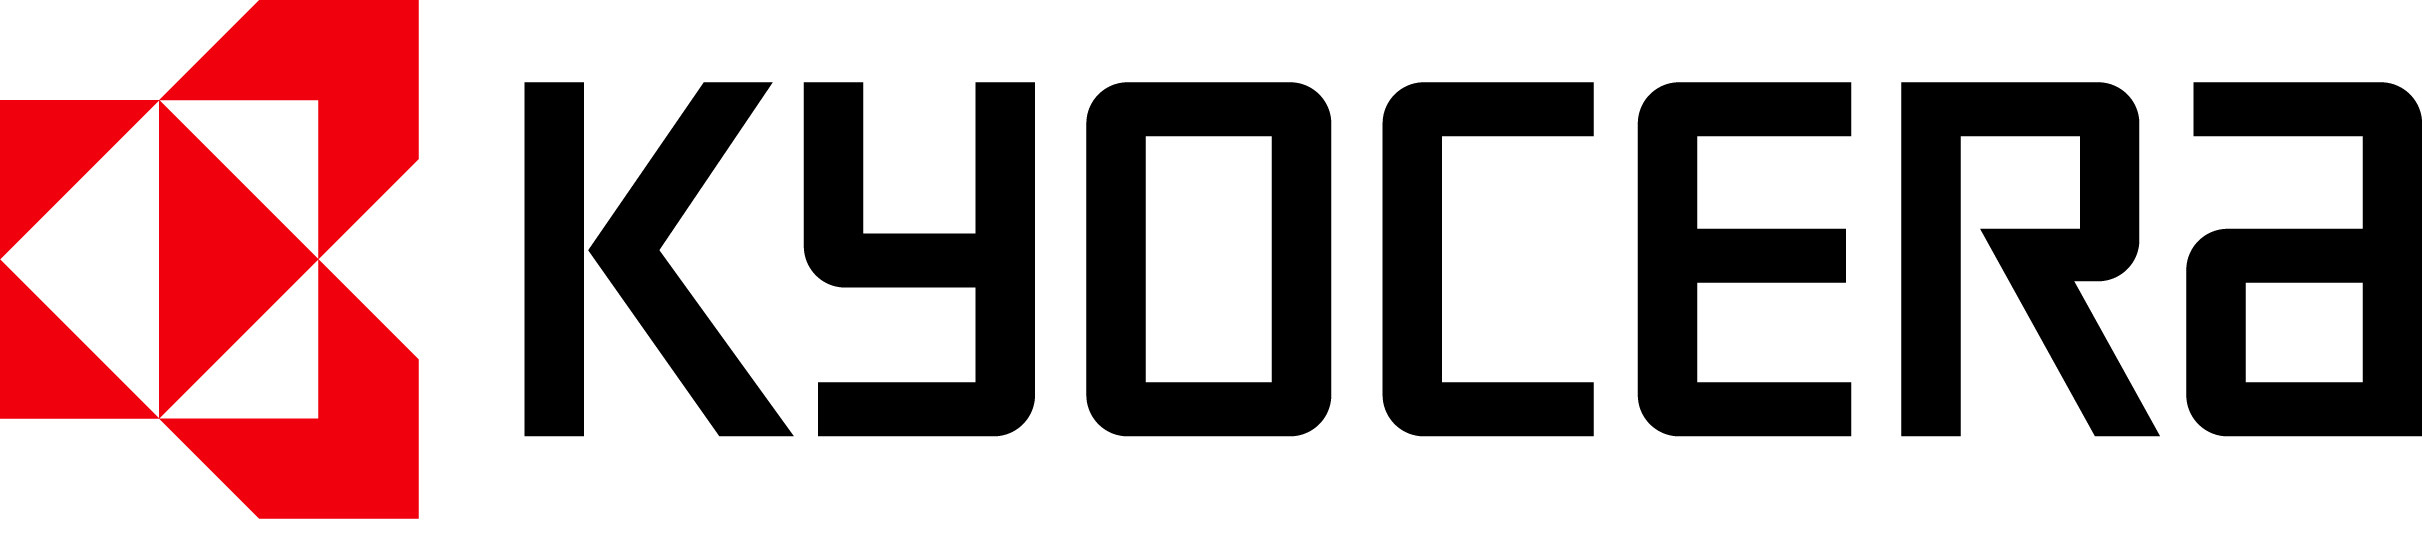 Kyocera Logo Wallpaper